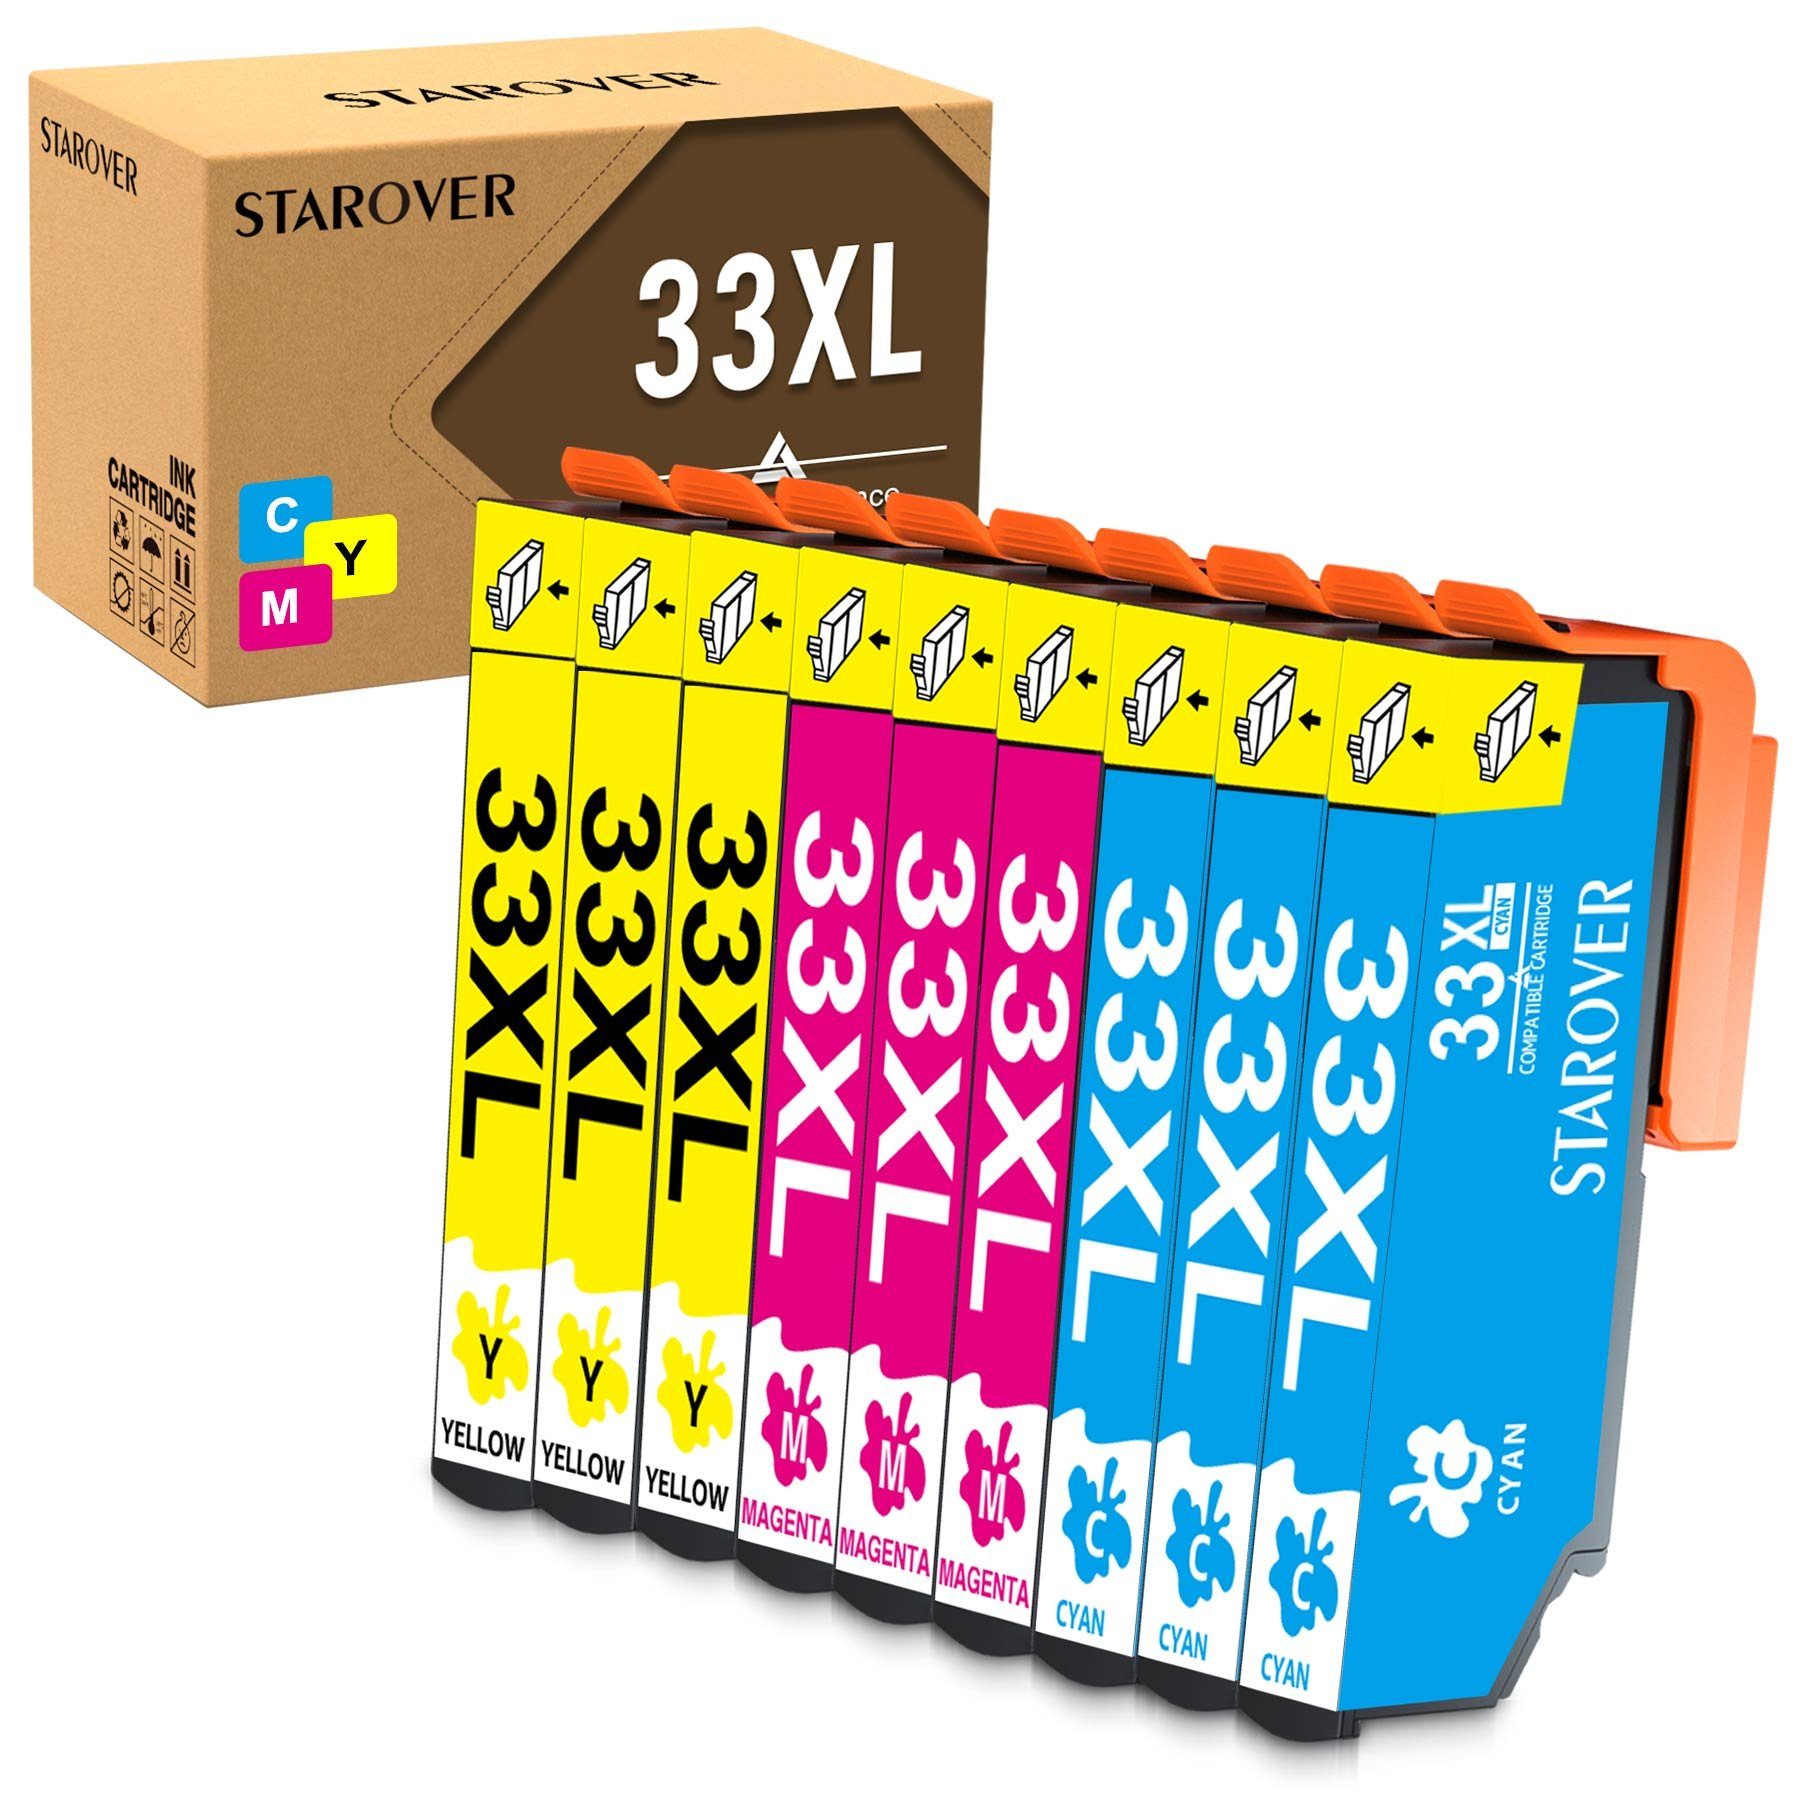 ONLYU Multipack für EPSON 33 XL Cyan,Magenta,Gelb Tintenpatrone (Expression Premium XP-530 XP-540 XP-630 XP-635 XP-640, XP-645 XP-7100 XP-830 XP-900 Serie Drucker) 3Cyan,3Magenta,3Gelb